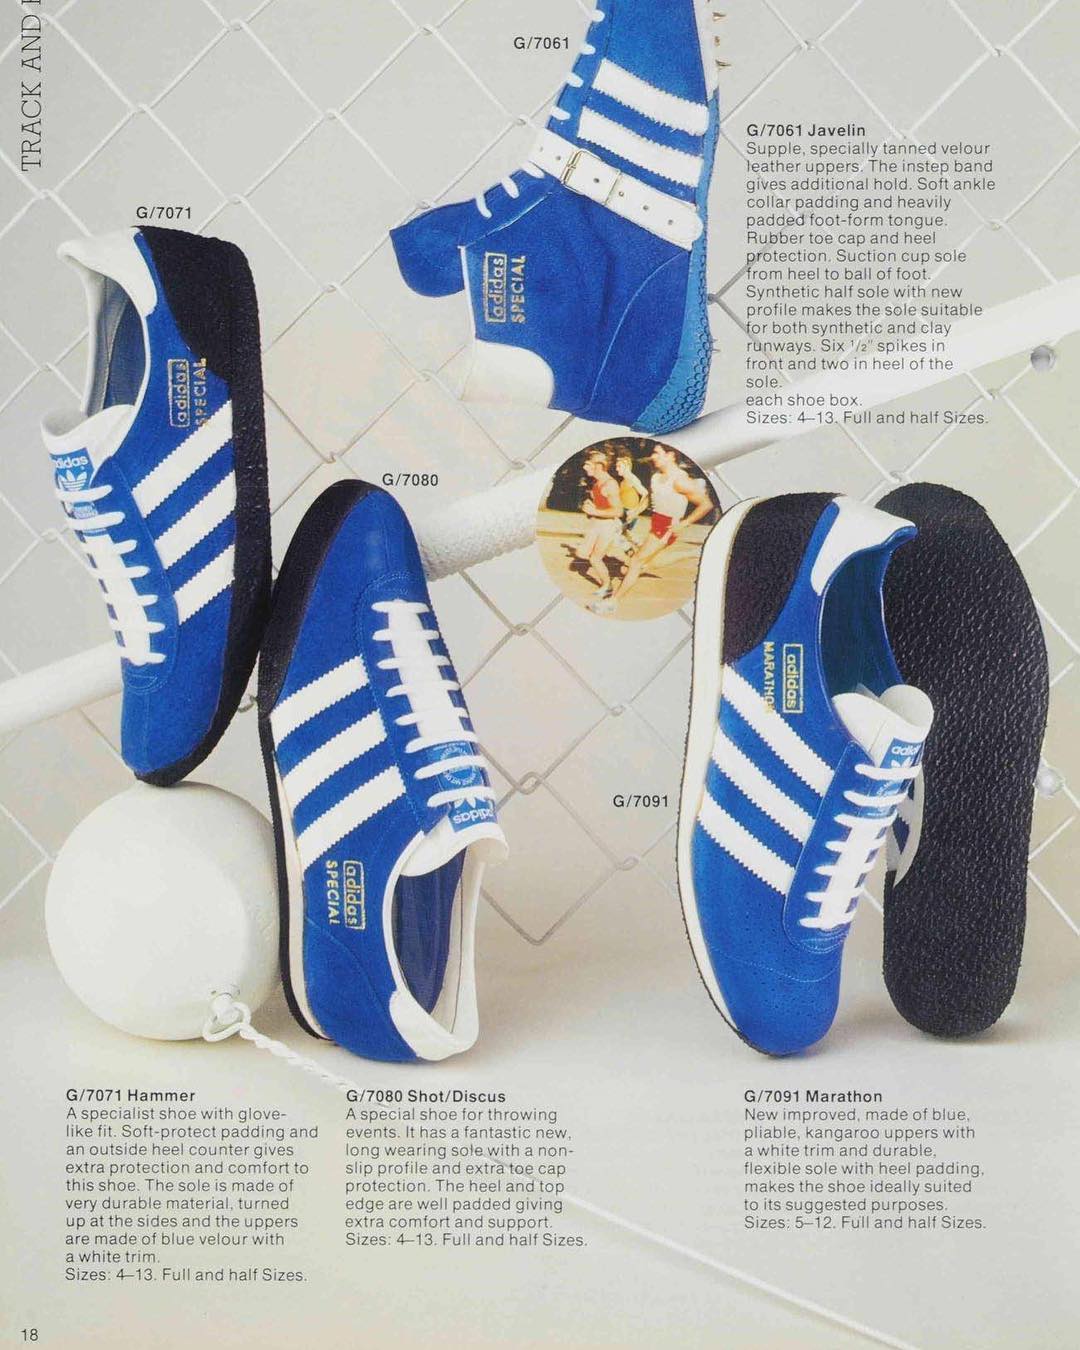 Bevestigen aan Bijna dood Belonend deadstock_utopia on Twitter: "1975 catalogue #adidas #vintage  https://t.co/OrgOaNG7IZ" / Twitter